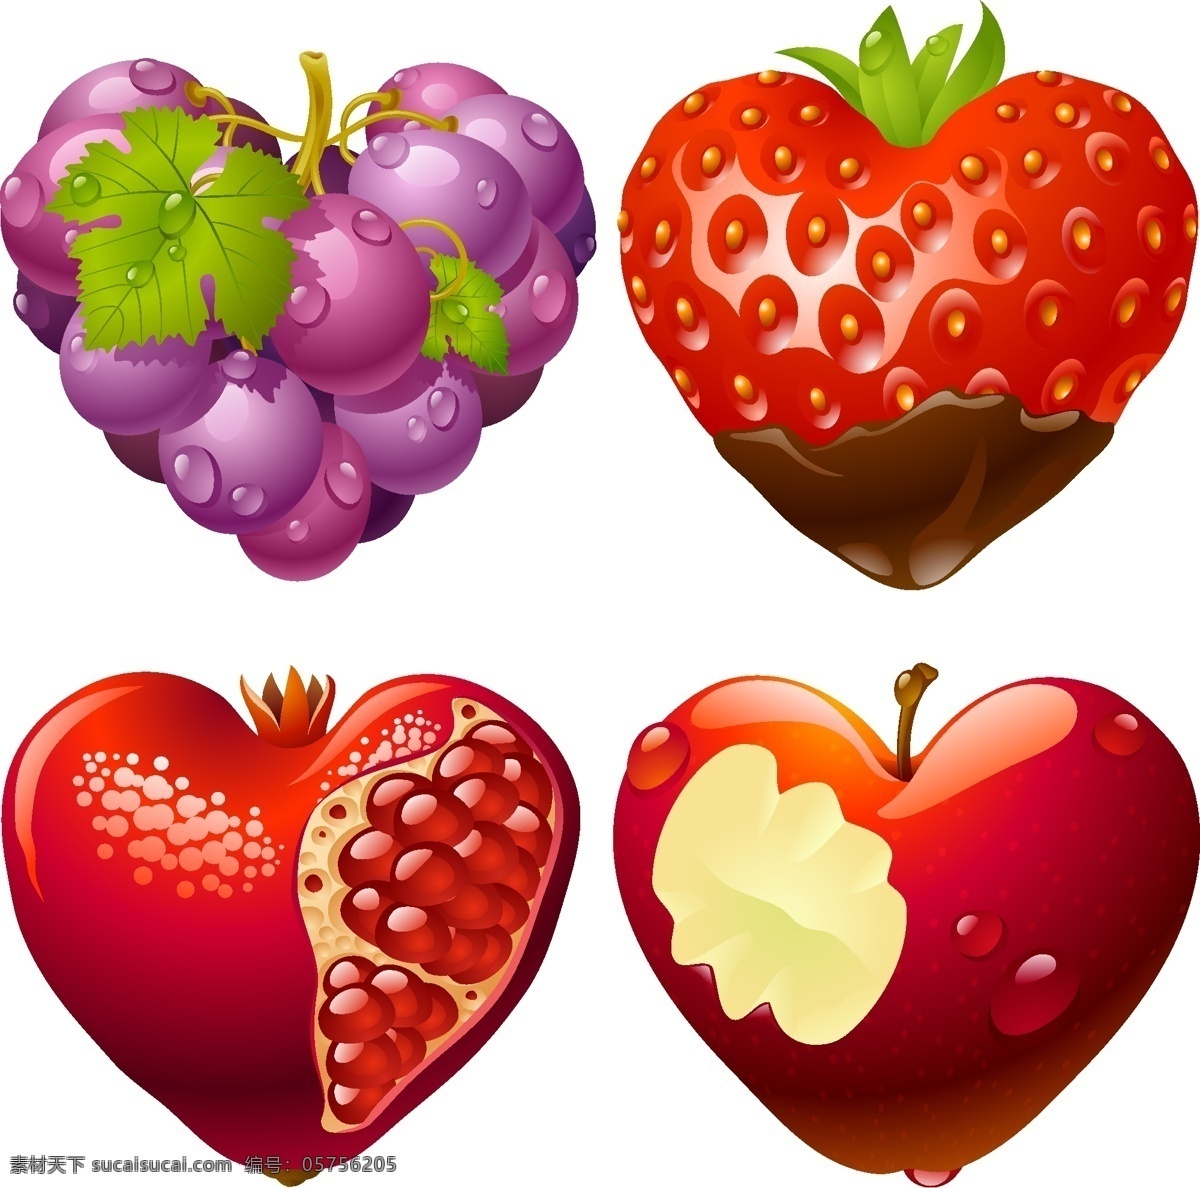 创意爱心水果 创意 爱心 水果 葡萄 草莓 石榴 苹果 白色